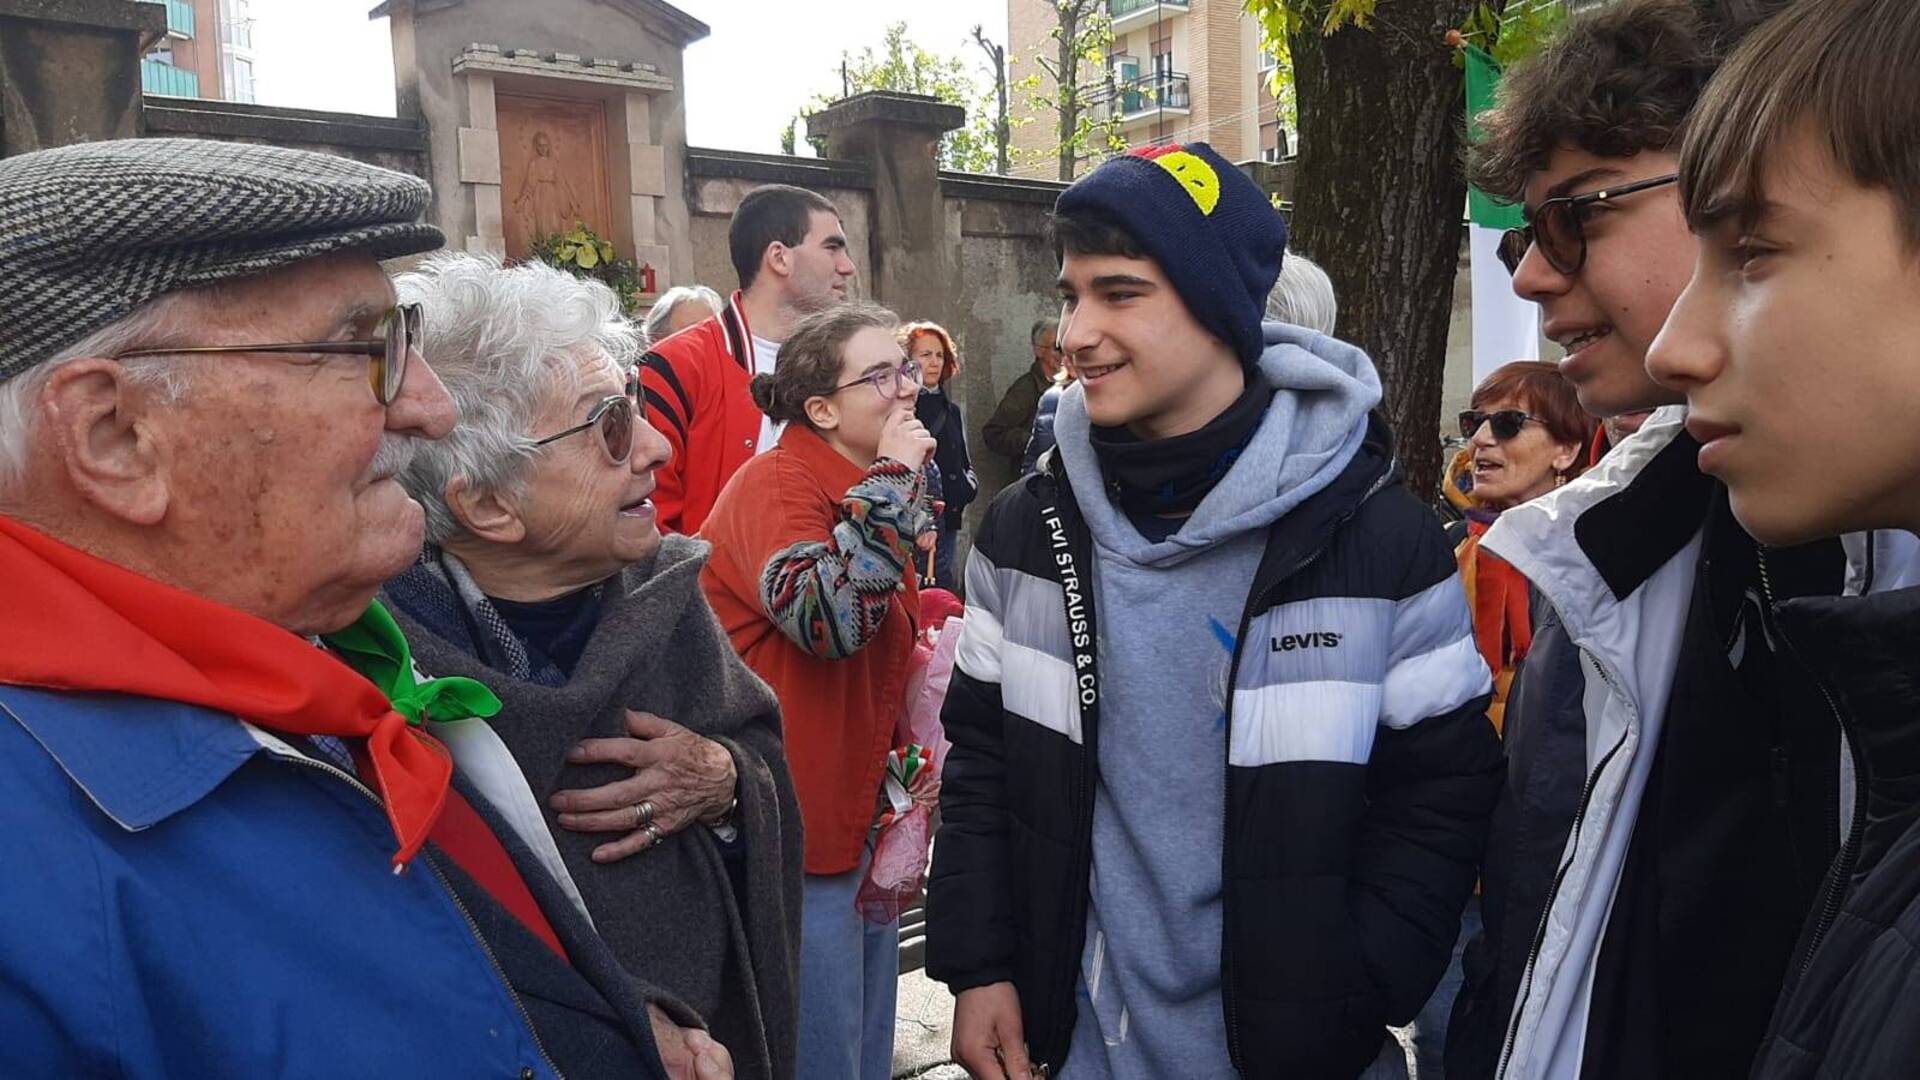 Saronno, Matteo, Jacopo e Antonio condividono l’emozione del 25 aprile “in piazza coi partigiani”